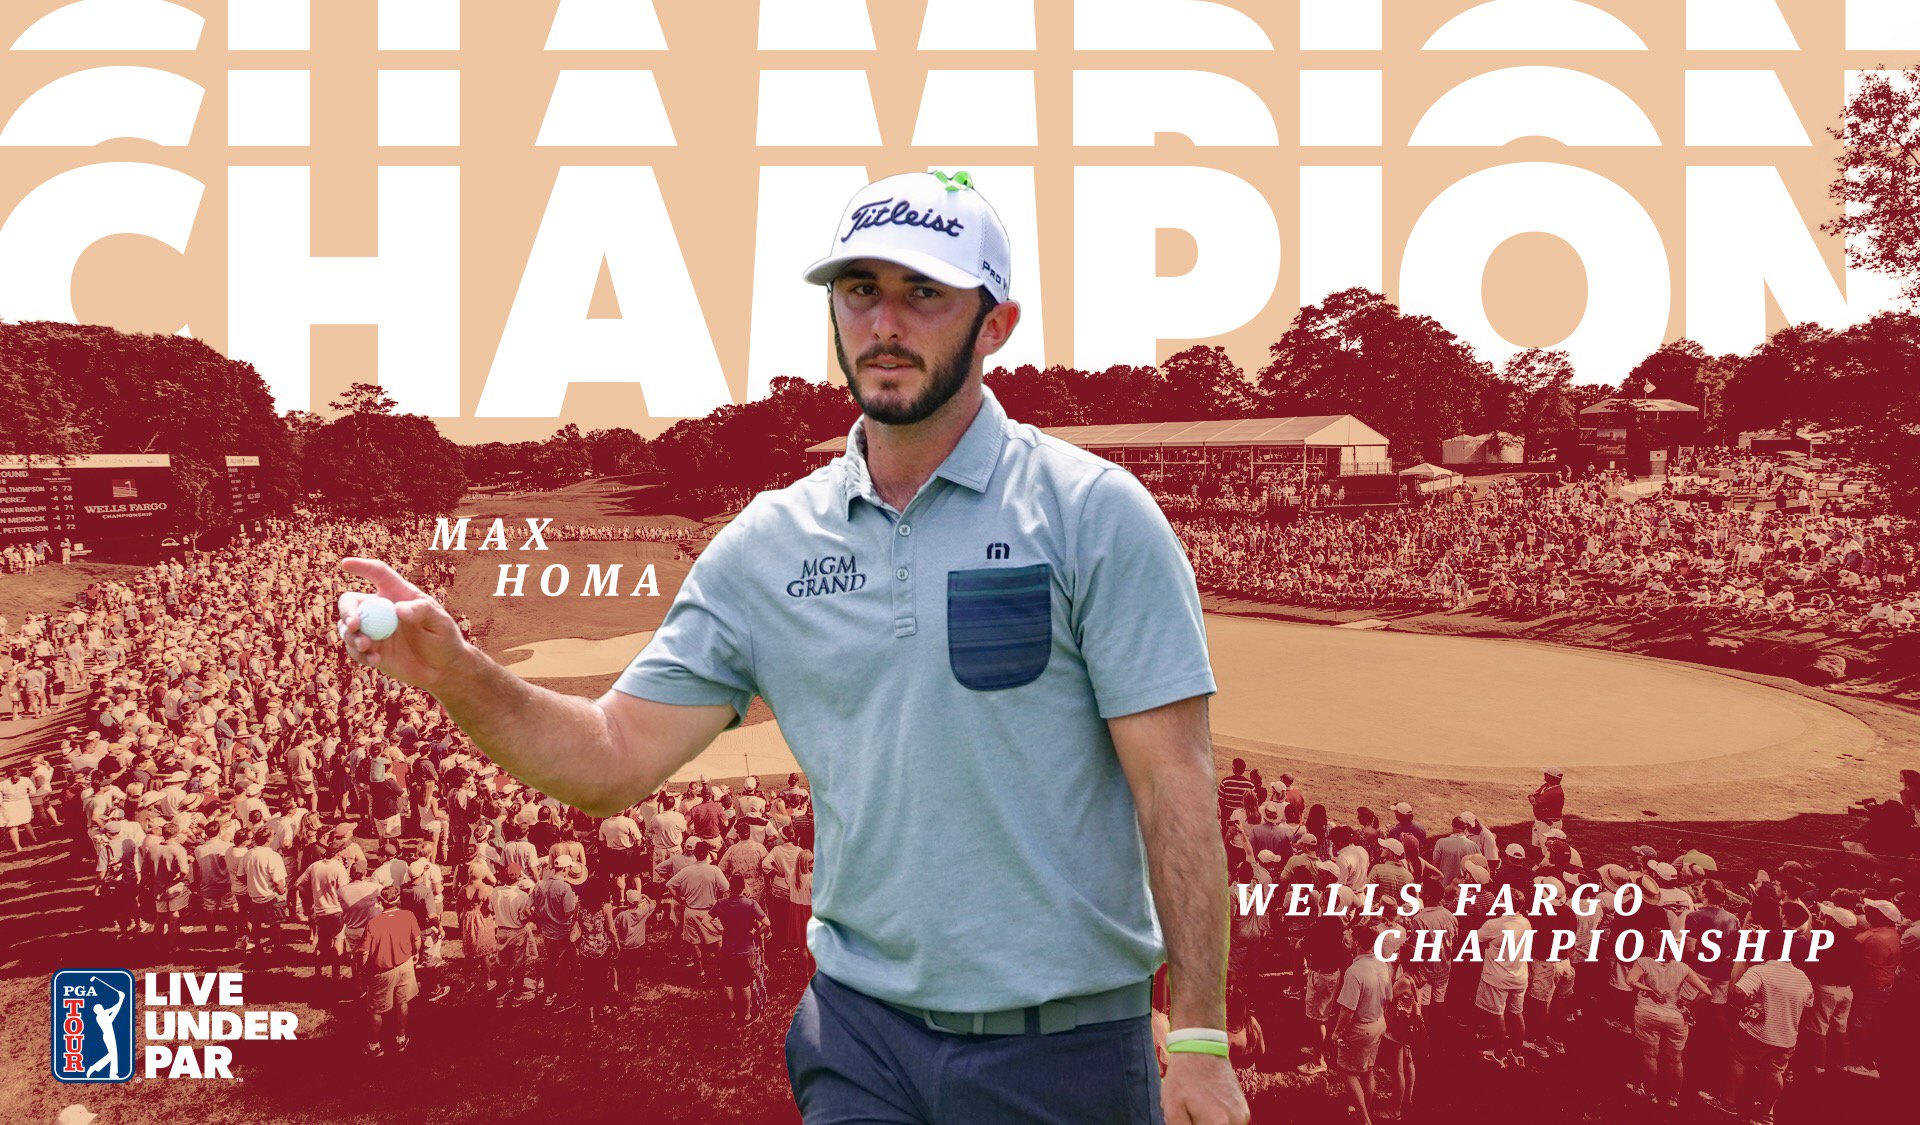 Max Homa vô địch Wells Fargo Championship, giành danh hiệu PGA Tour đầu tiên